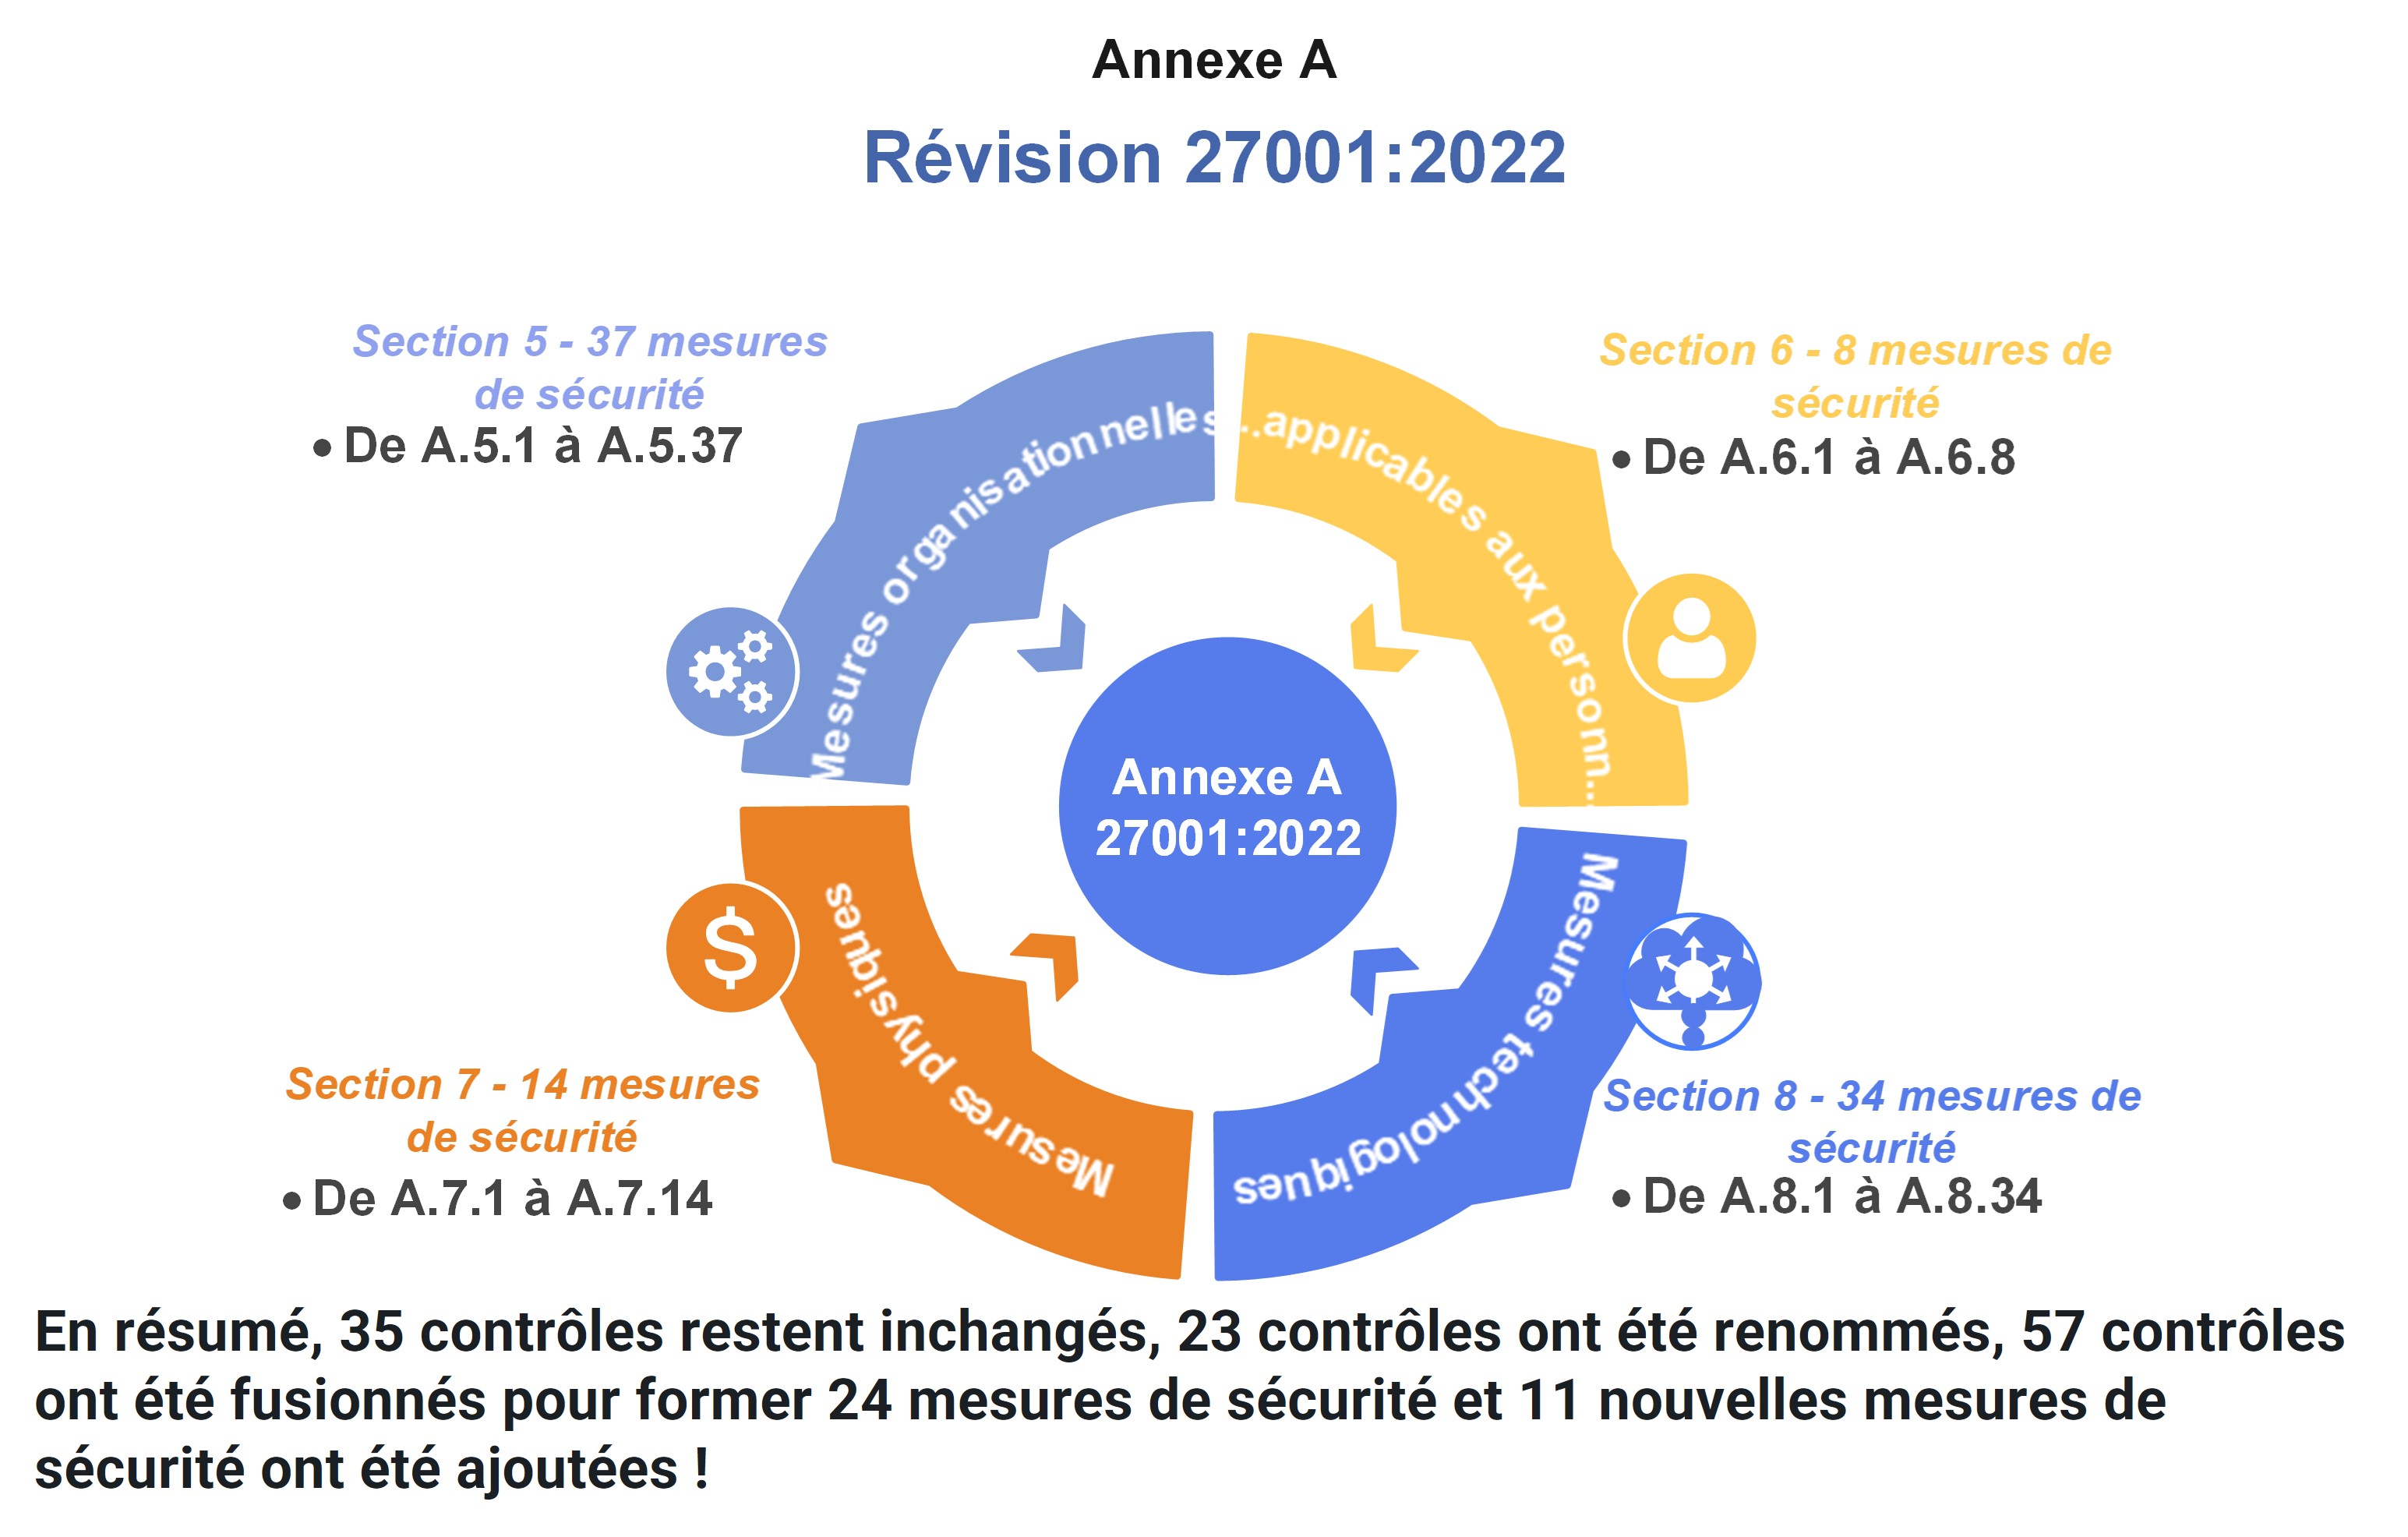 Structure de la norme ISO 27001 (révision 2022)